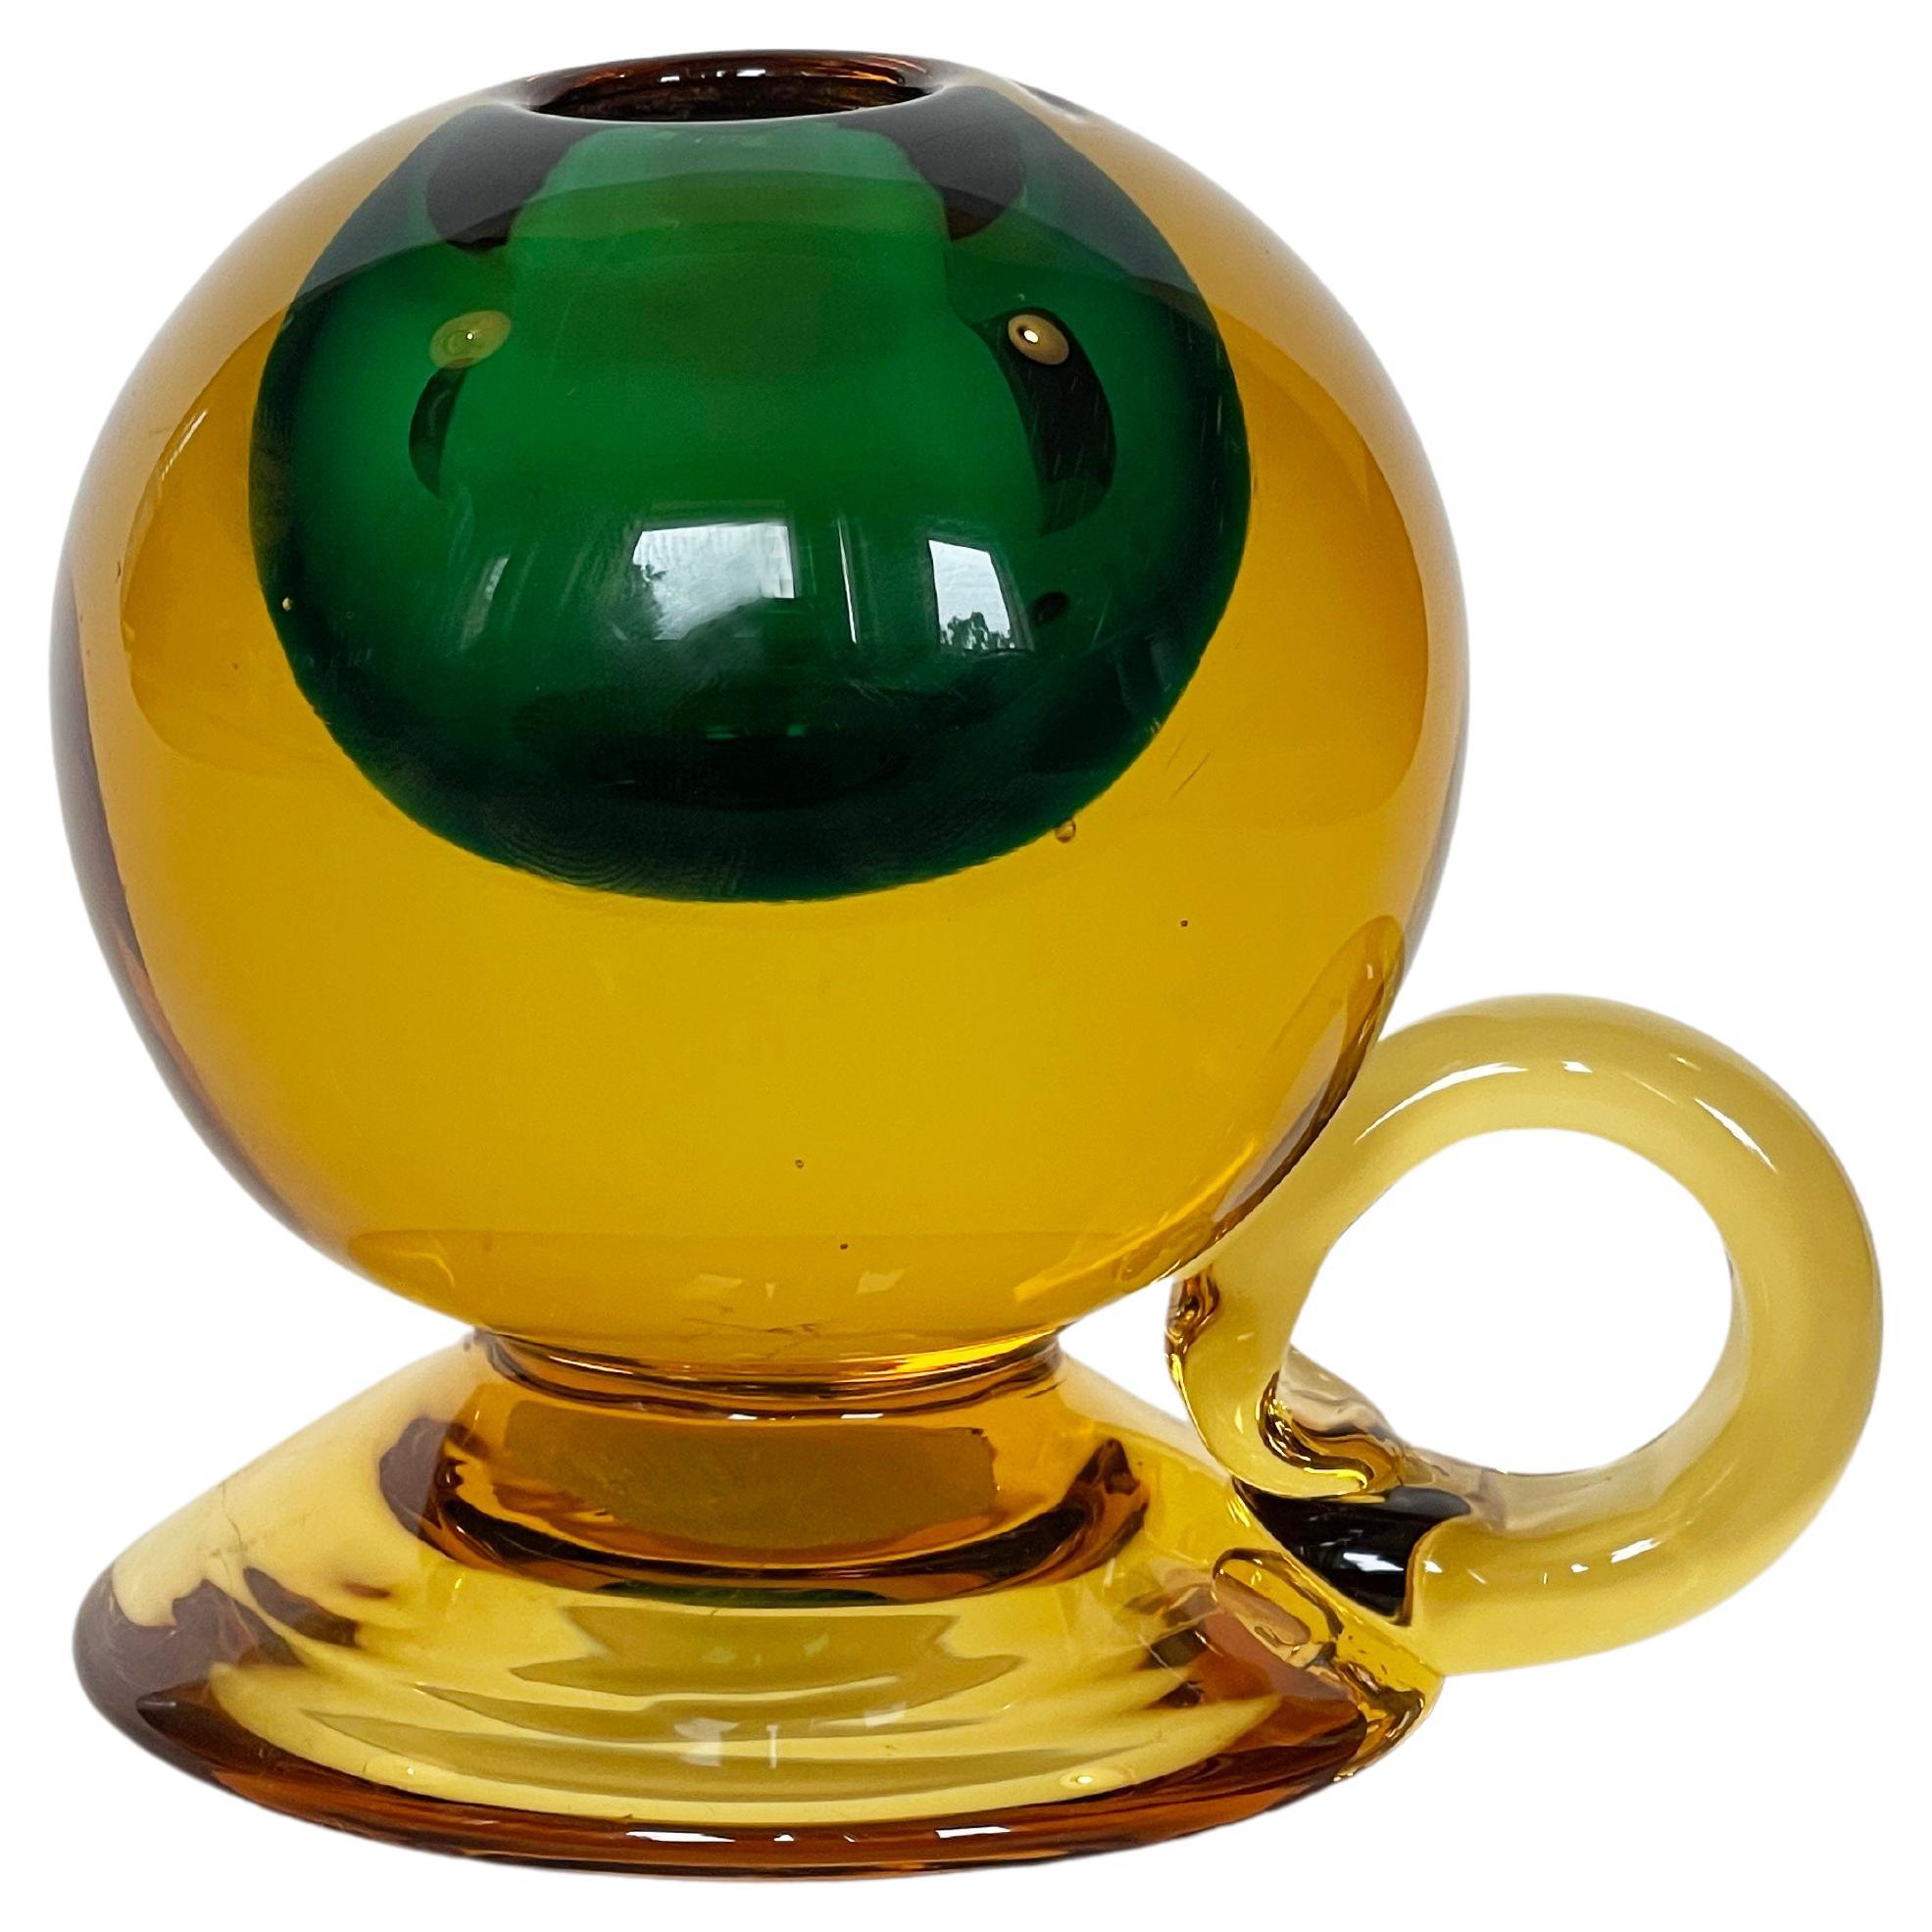 Magnifique petit chandelier de Vetreria Cenedese.
Sphère en verre fabriquée à la main par Sommerso à partir de verre d'art de Murano.
De nombreux artistes célèbres ont travaillé pour ce fabricant. Cette pièce particulière présente un éclat ambré ou